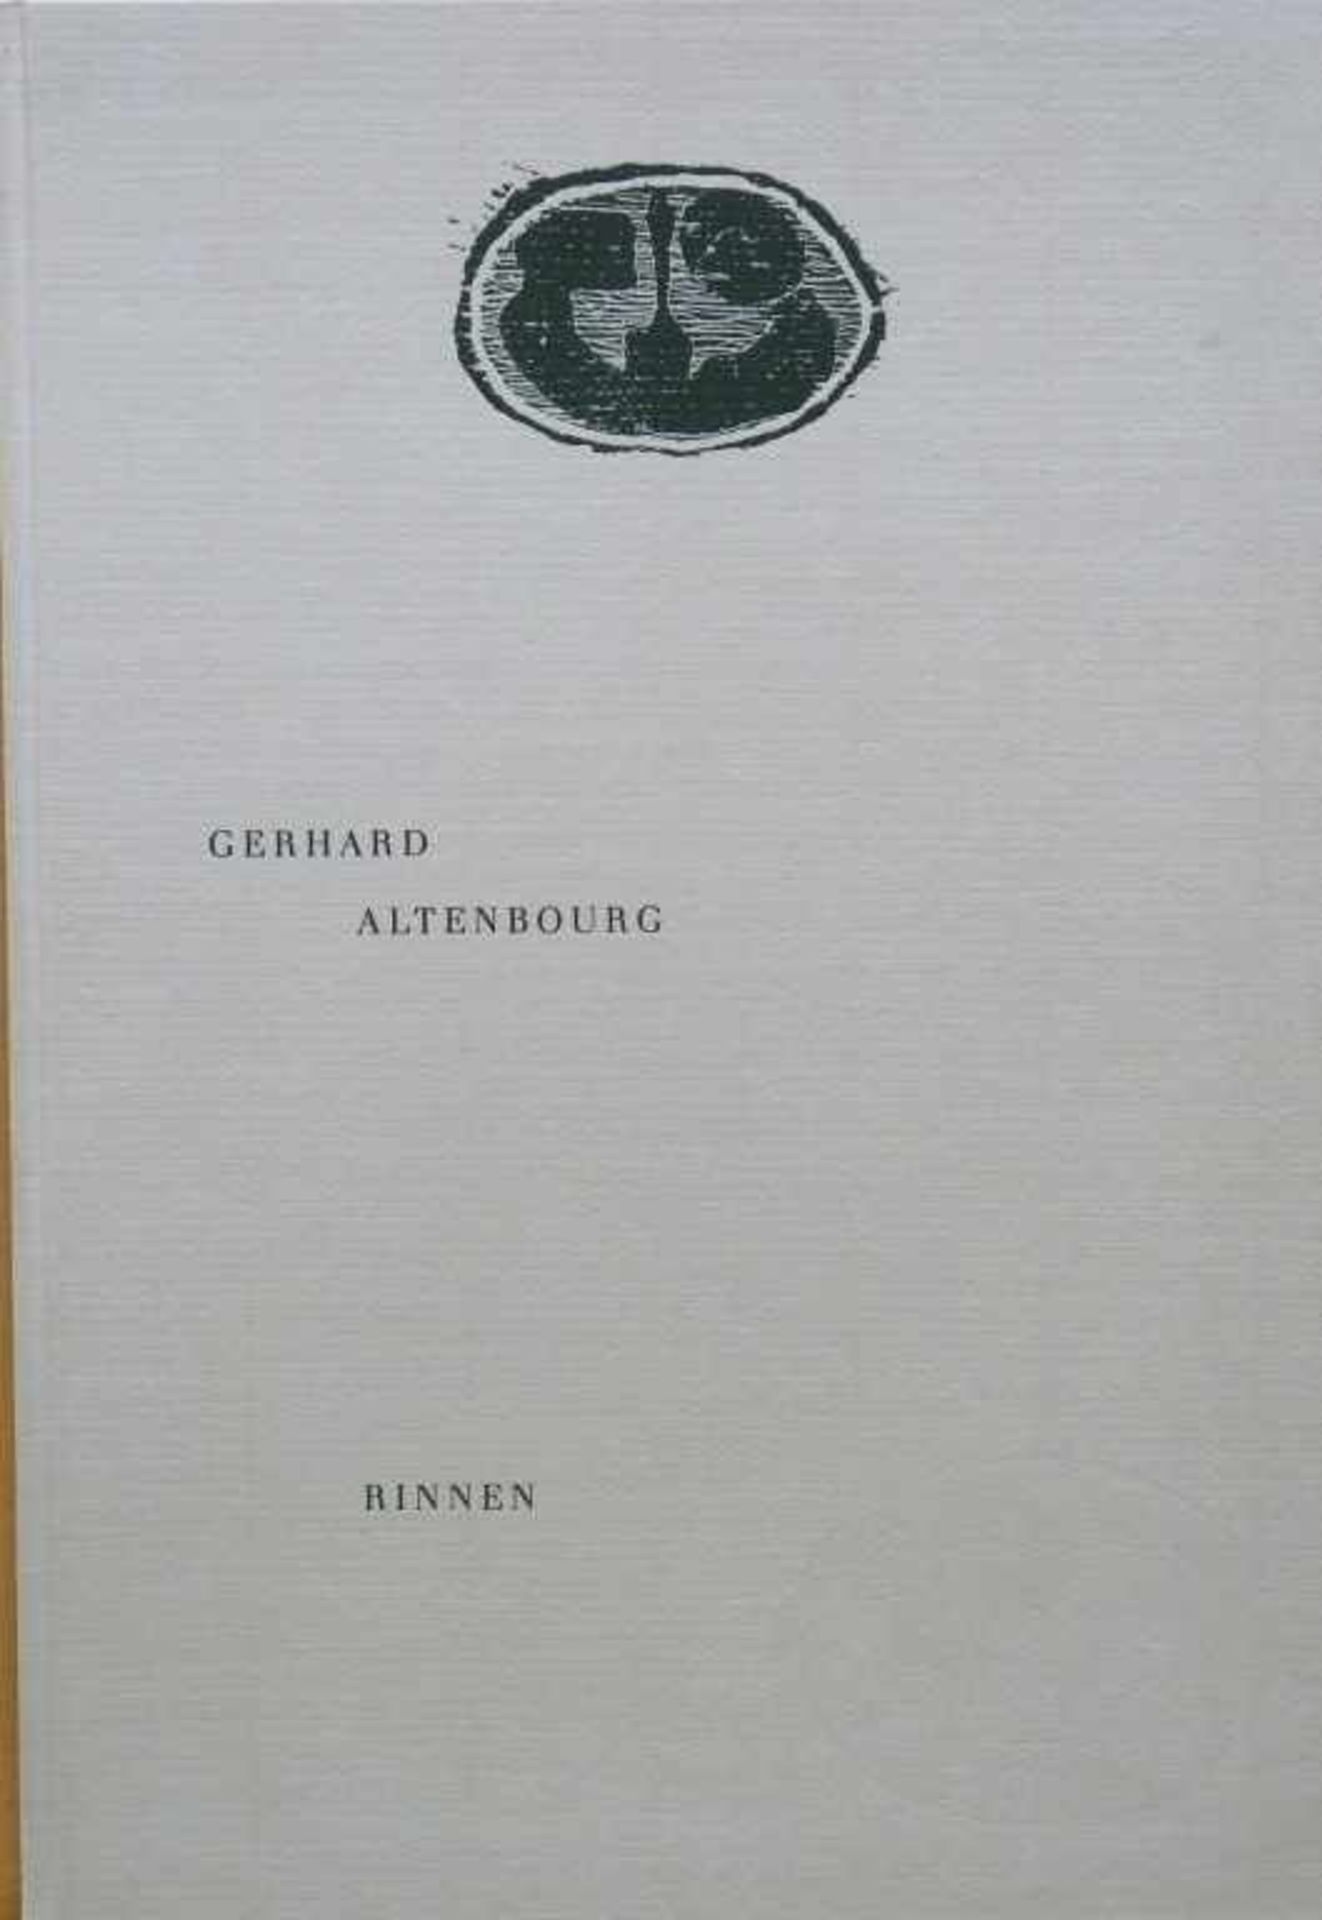 ALTENBOURG, GERHARD (Gerhard Ströch): "Rinnen", 199872 Seiten: zahlreiche in der Handschrift des